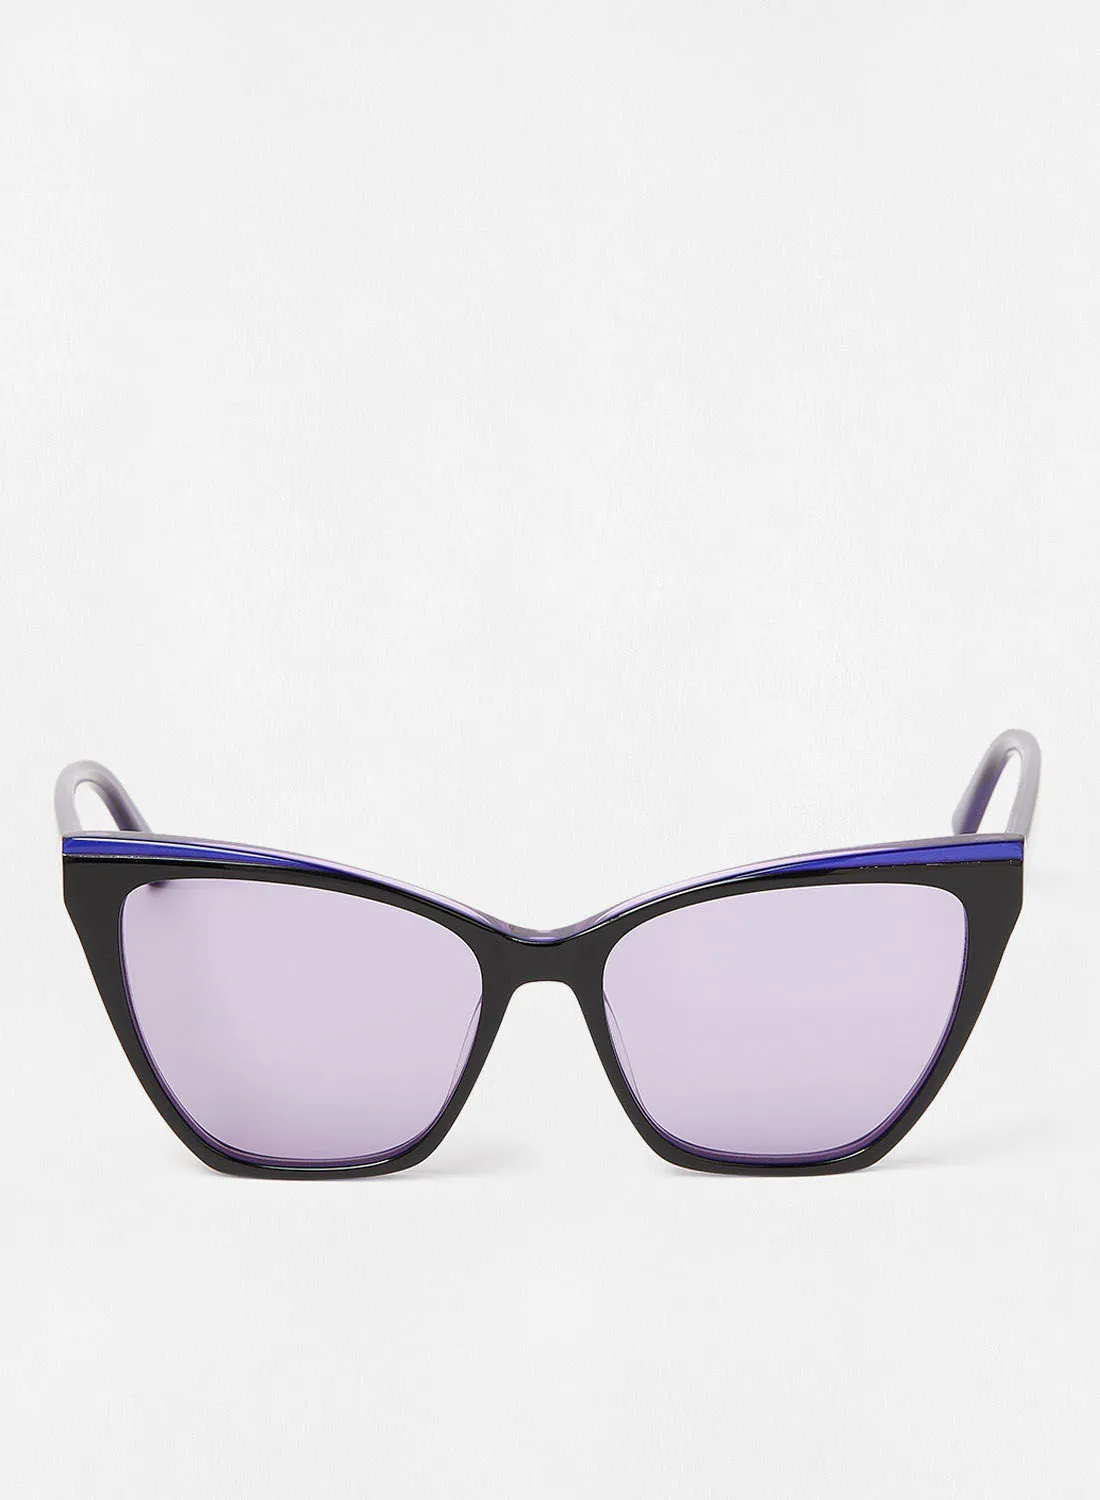 Karl Lagerfeld Women's UV Protection Cat Eye Sunglasses